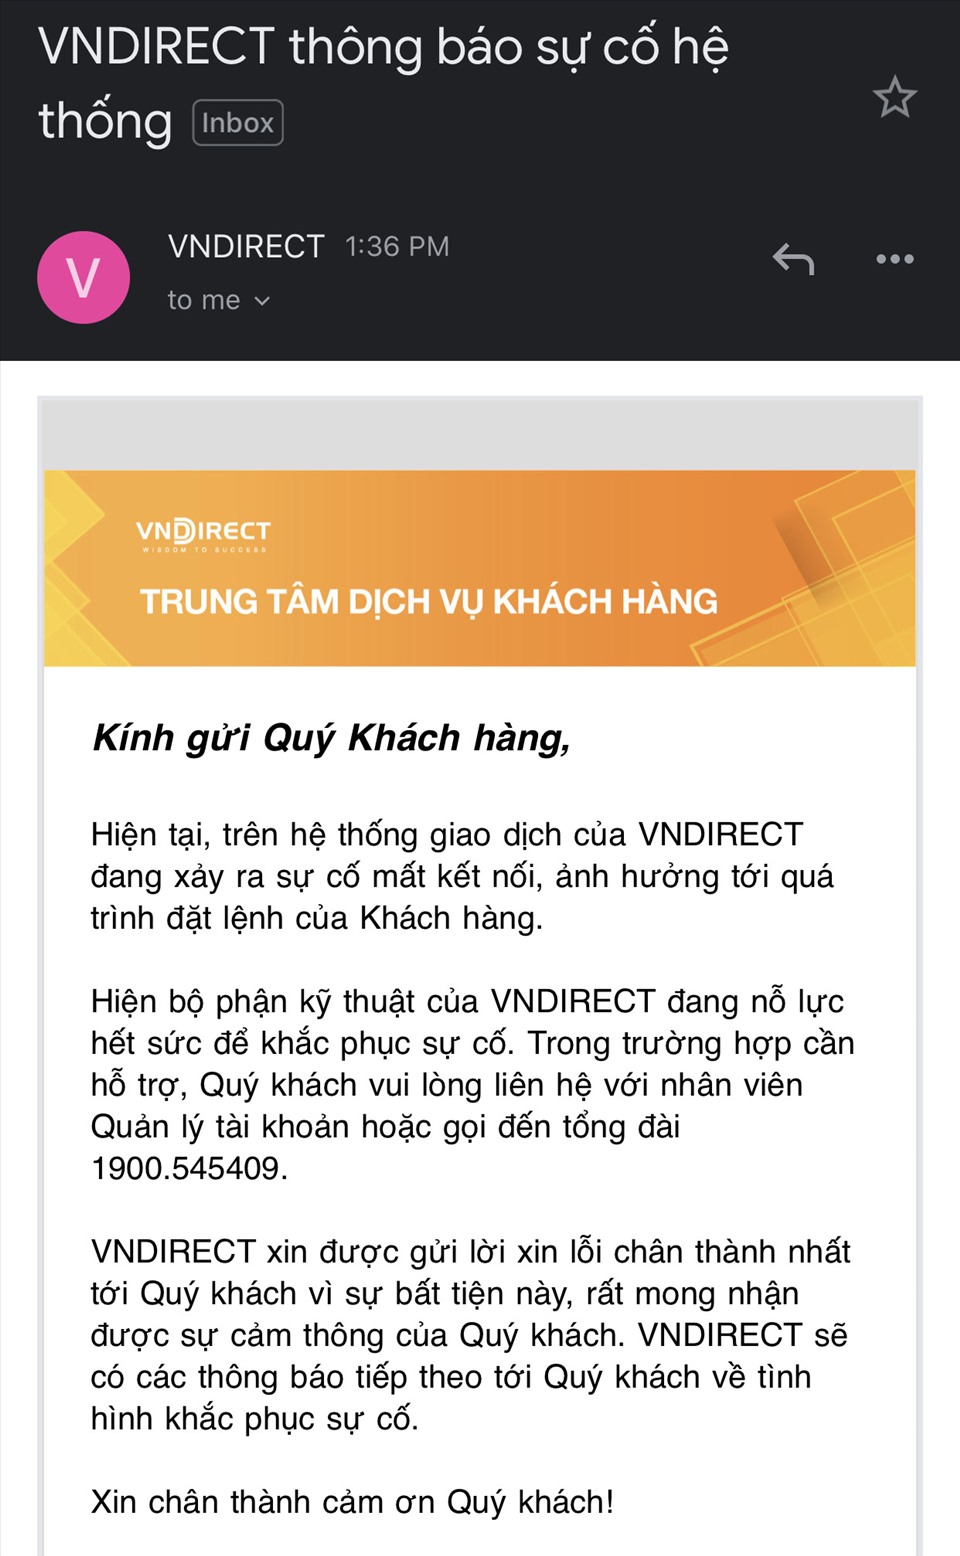 Email thông báo sự cố của VNDirect gửi cho khách hàng. Ảnh chụp màn hình